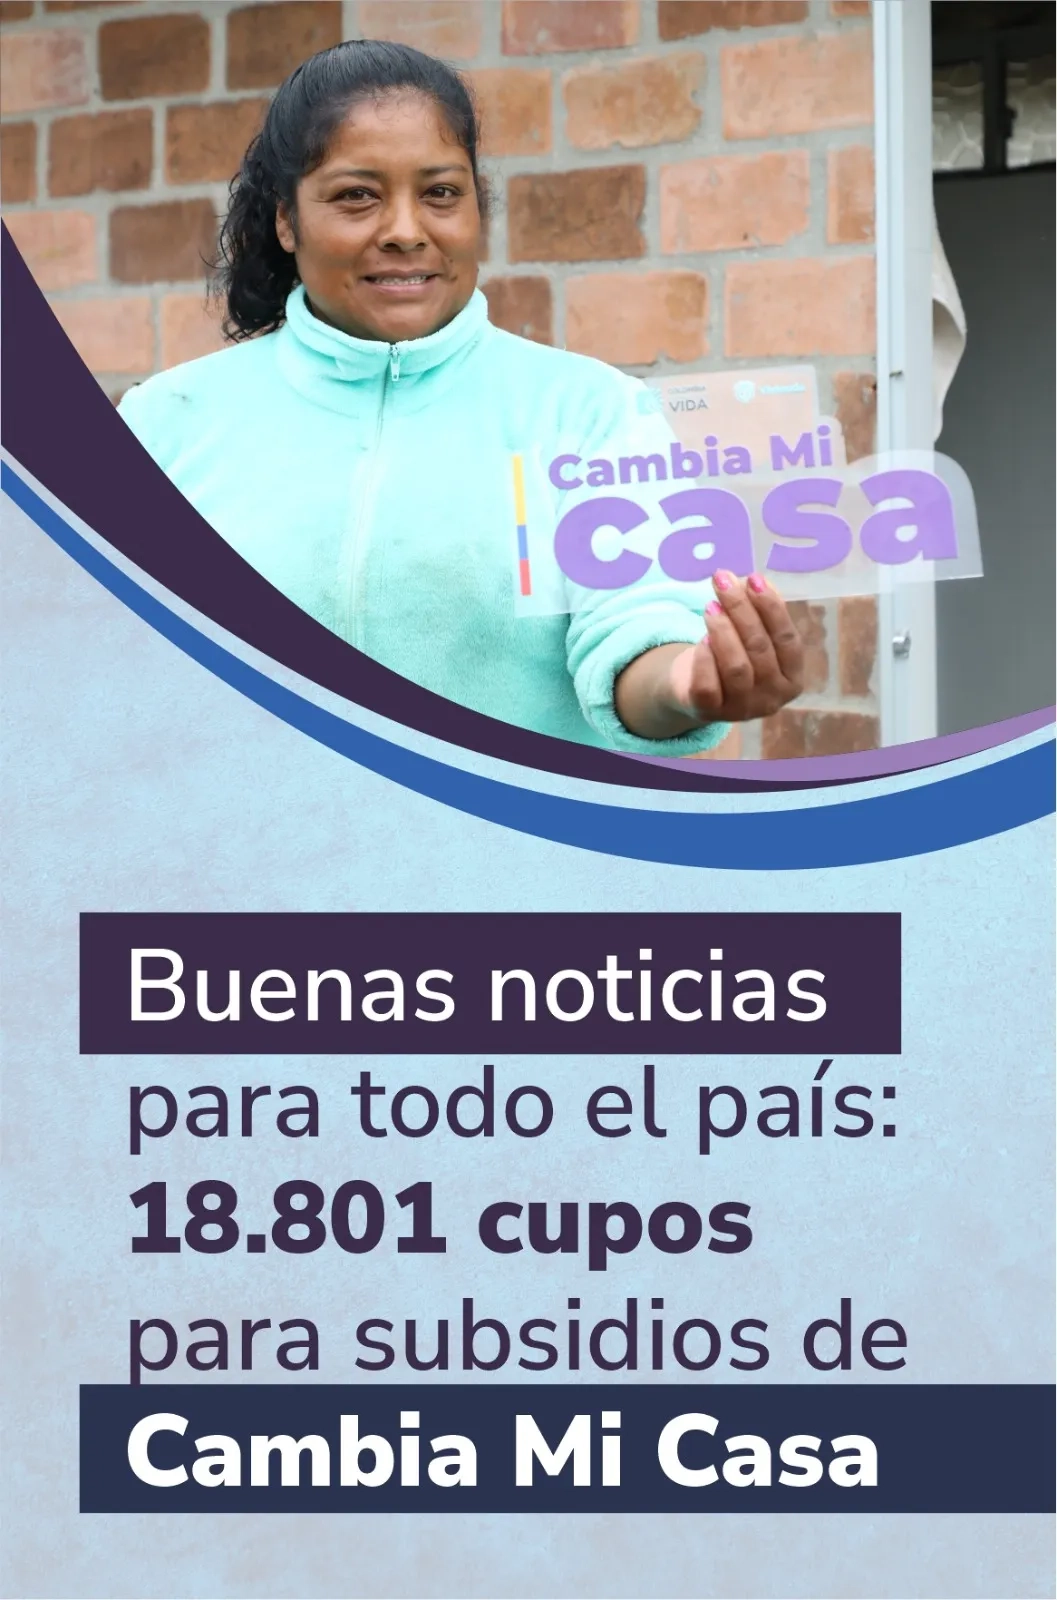 Buenas noticias para todo el país: 18.801 cupos para subsidios de Cambia Mi Casa